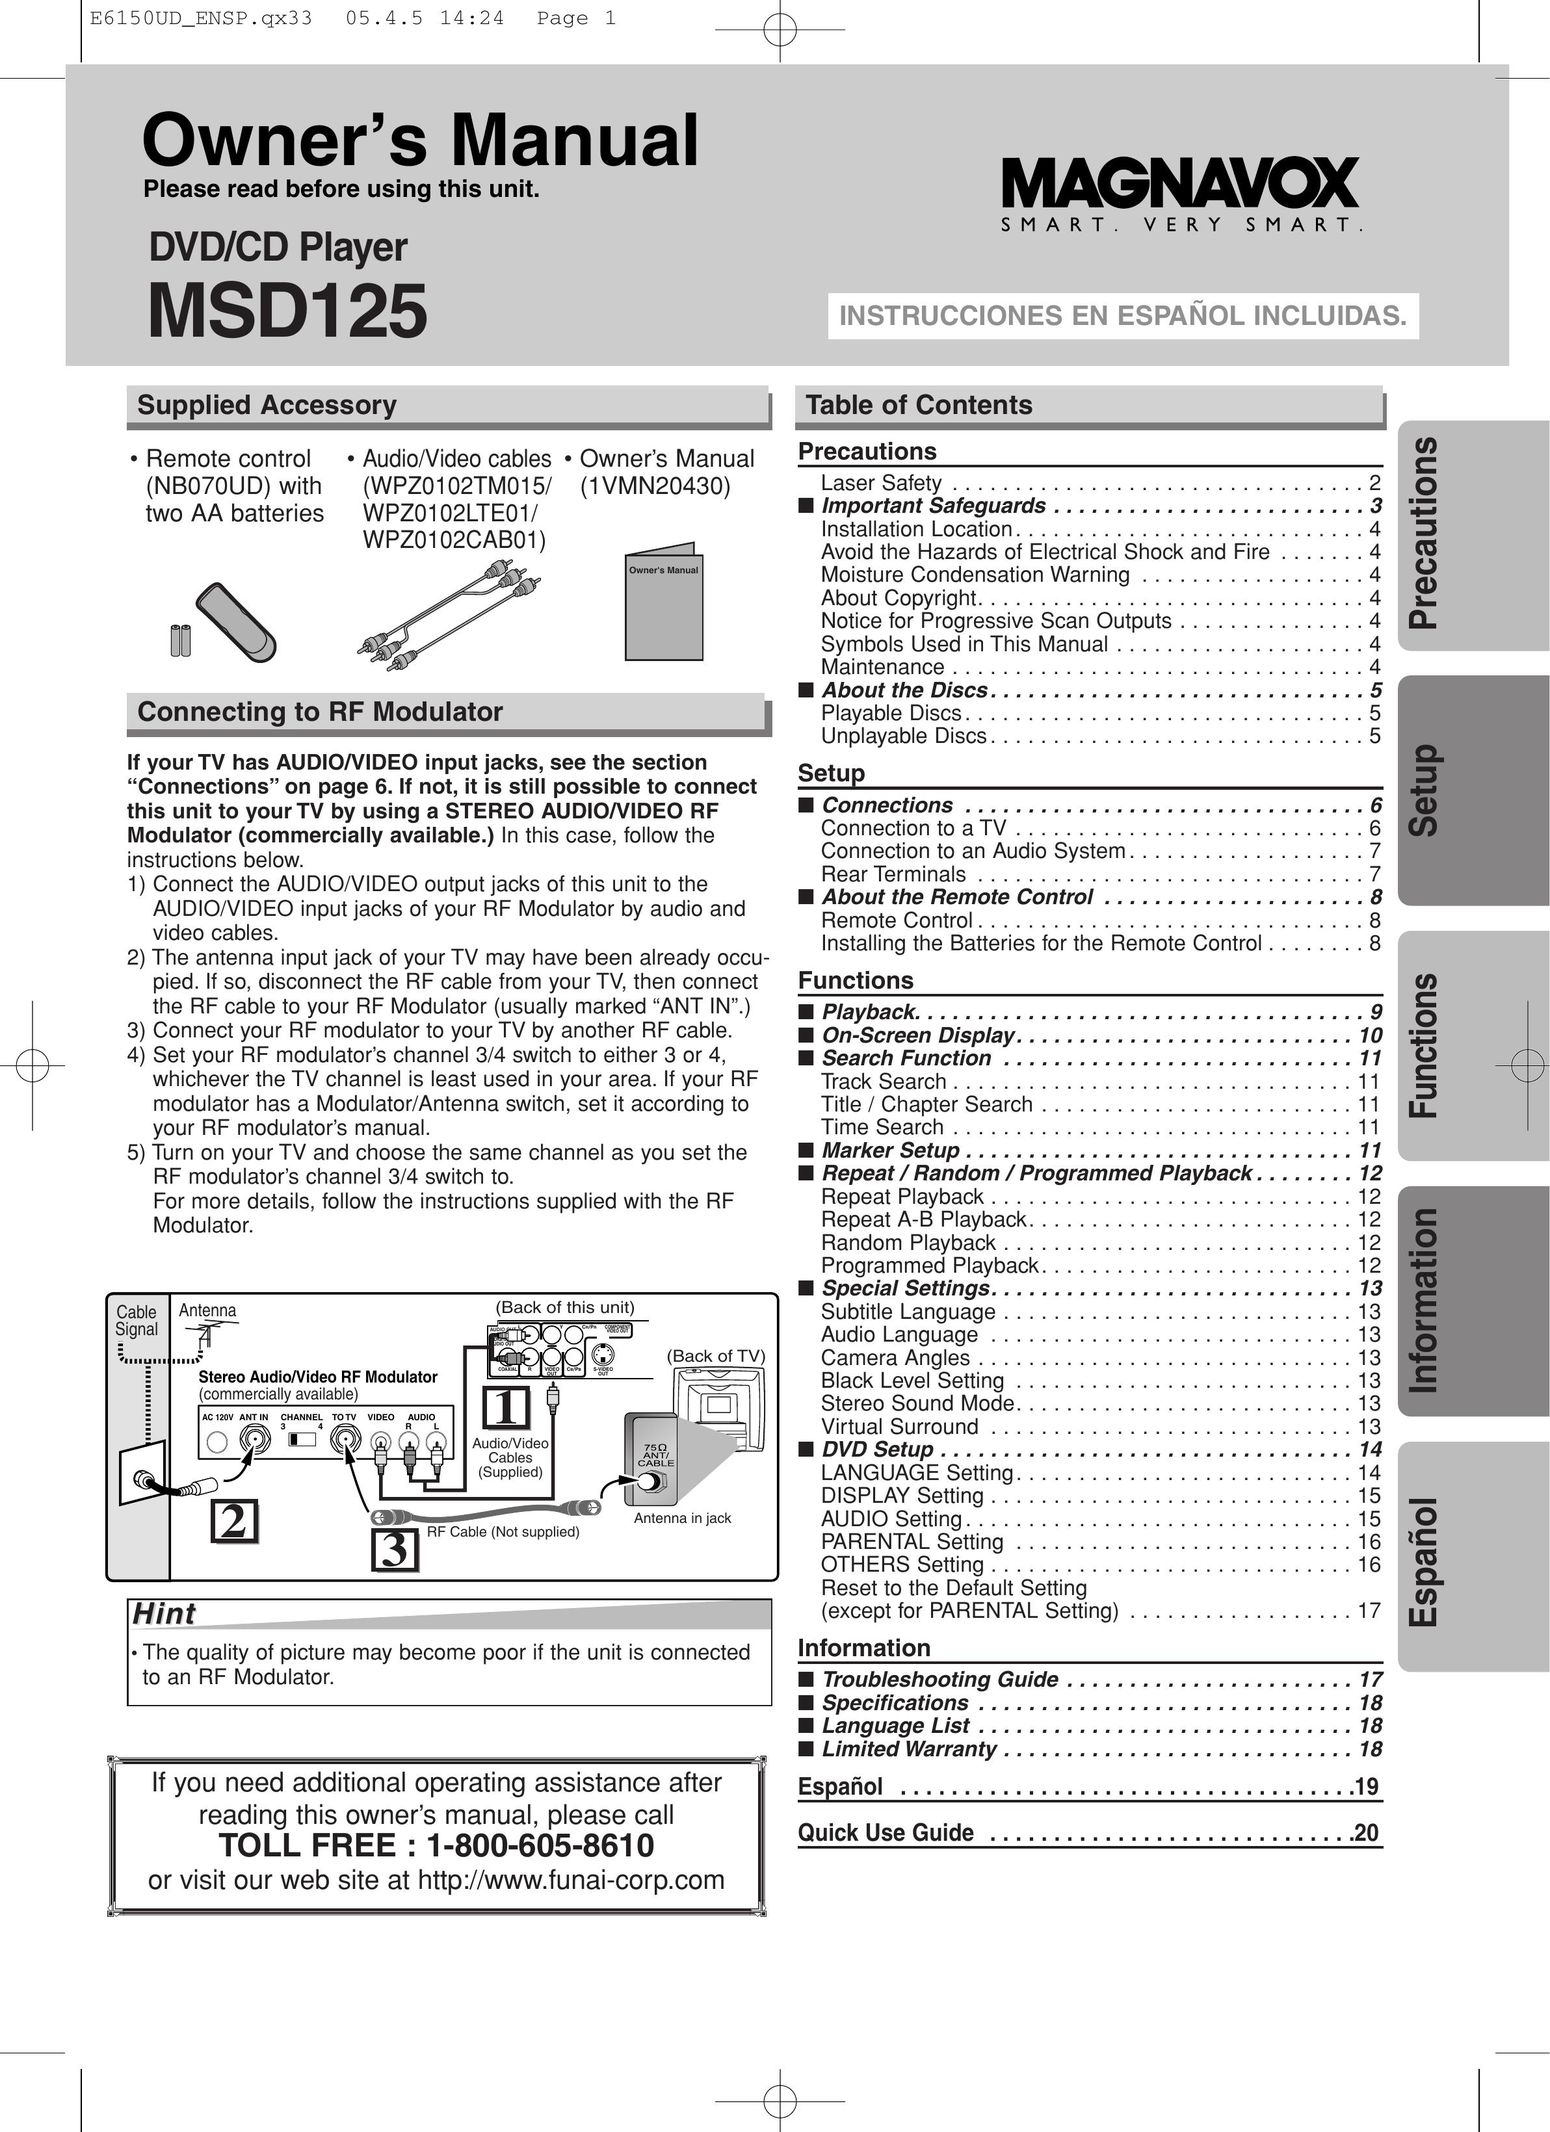 FUNAI MSD125 DVD Player User Manual